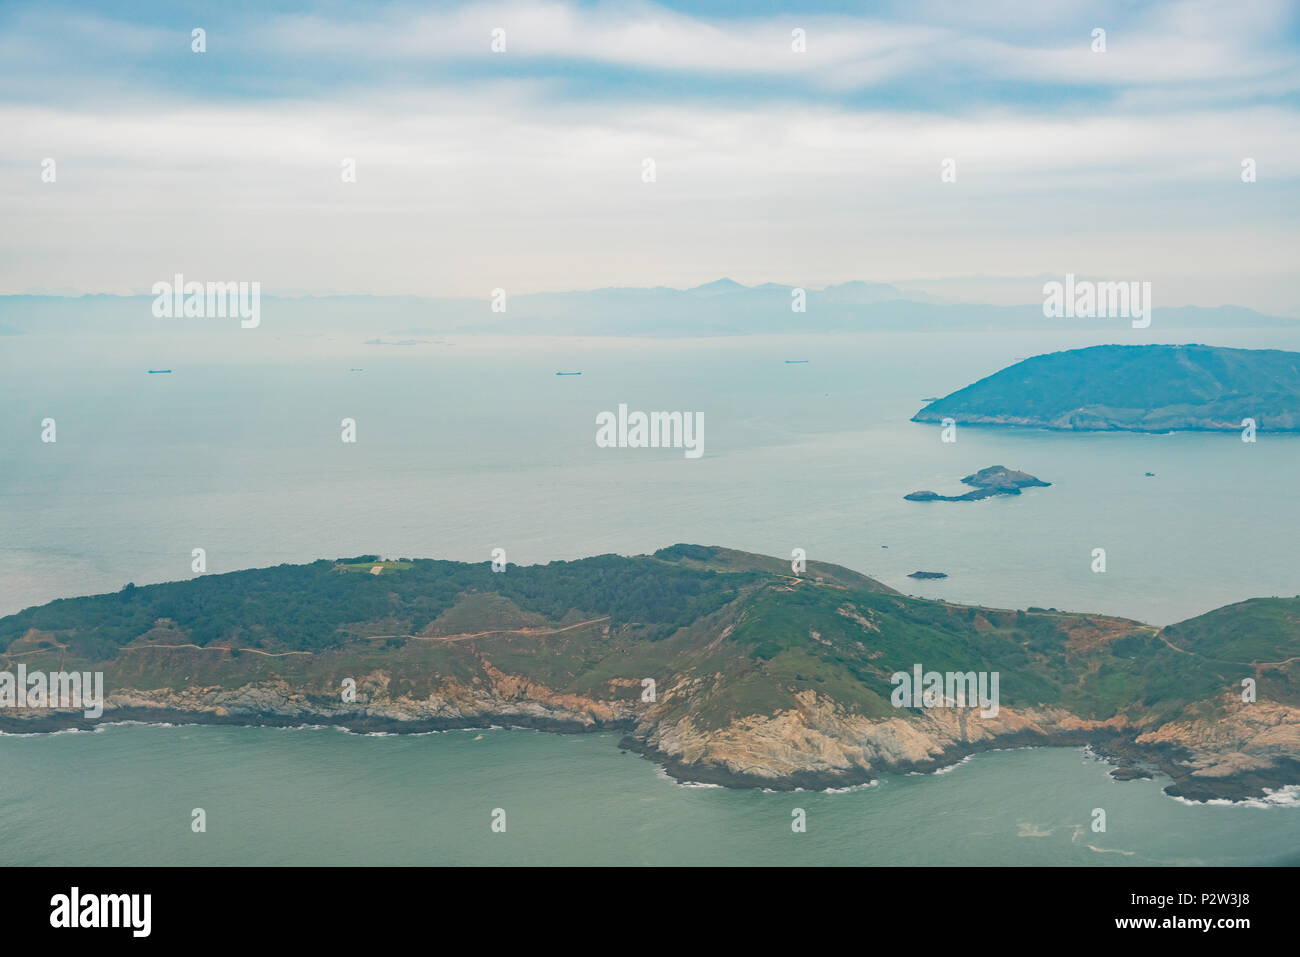 Aerial view of the Daqiu Island, Matsu, Taiwan Stock Photo